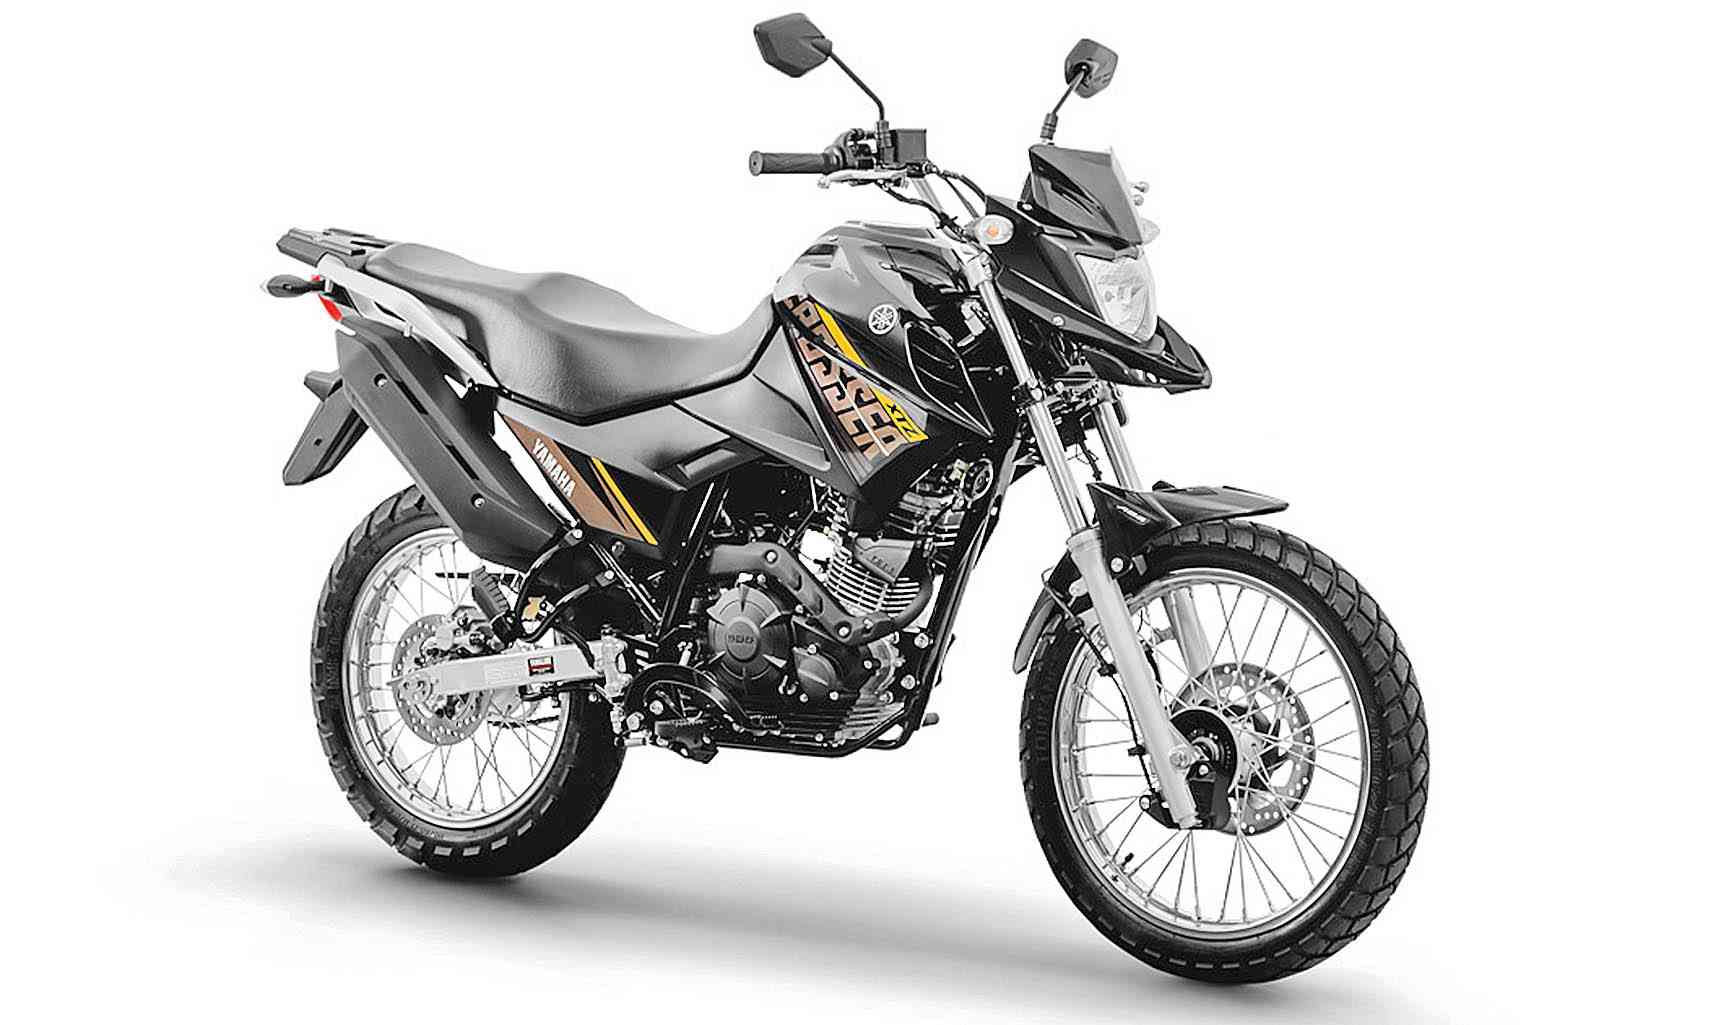 Primeiras impressões Yamaha Crosser 150 ABS 2023: um passo à frente